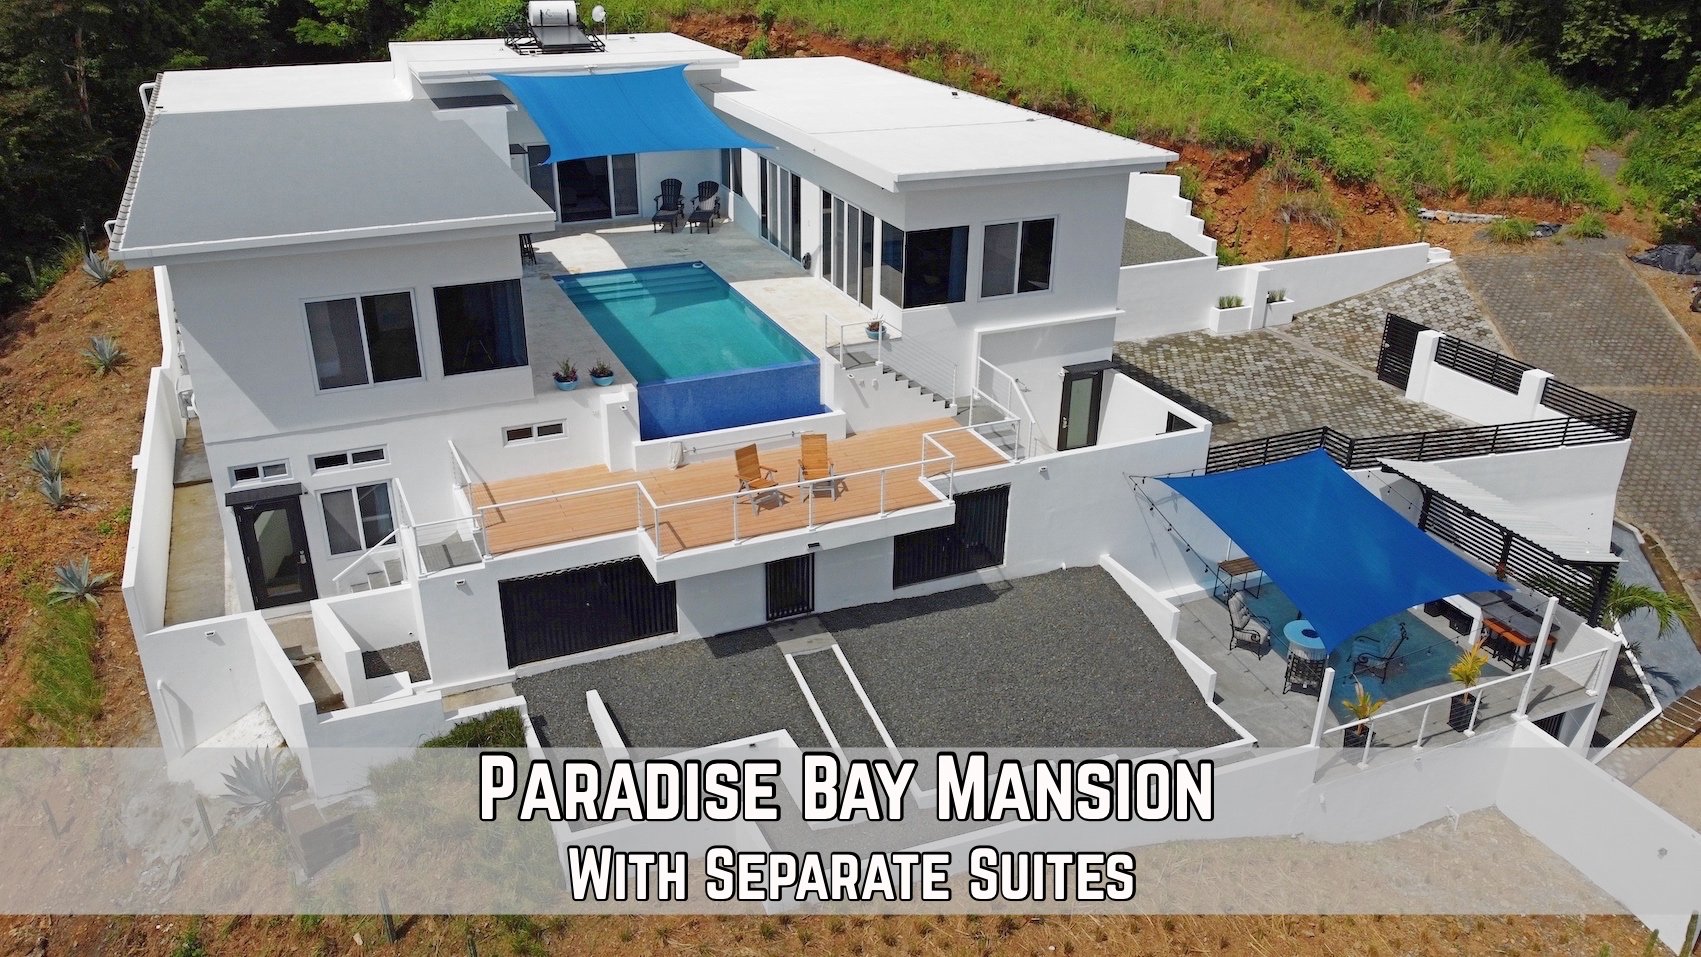 Paradise Bay Mansion For Sale San Juan Del Sur Nicaragua Real Estate 4.jpg